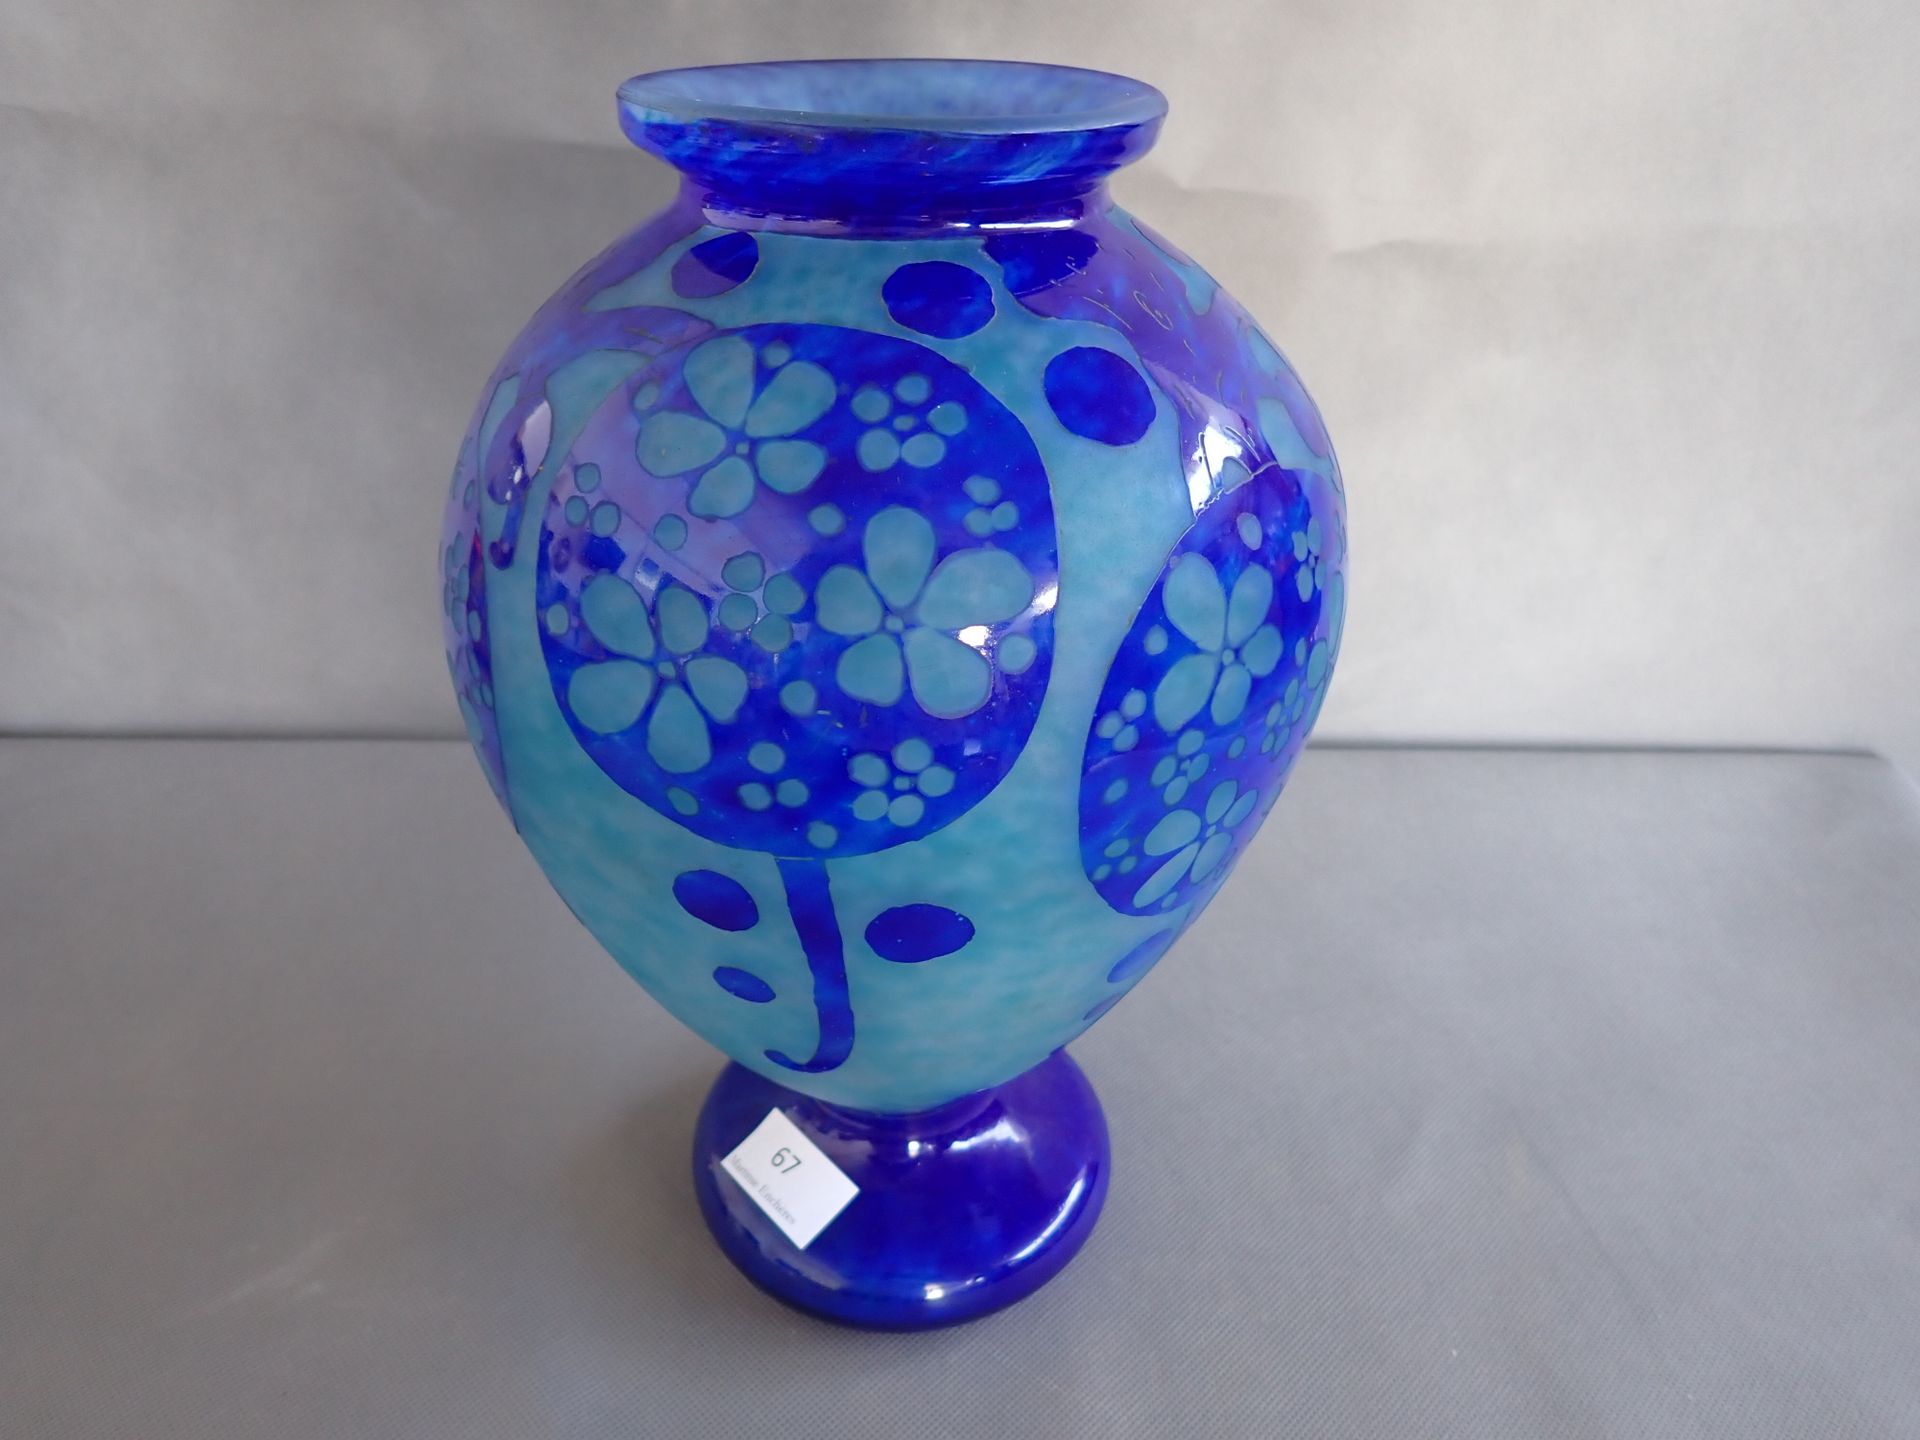 LE VERRE FRANÇAIS 
Vase with acid-etched decoration, H 31 cm